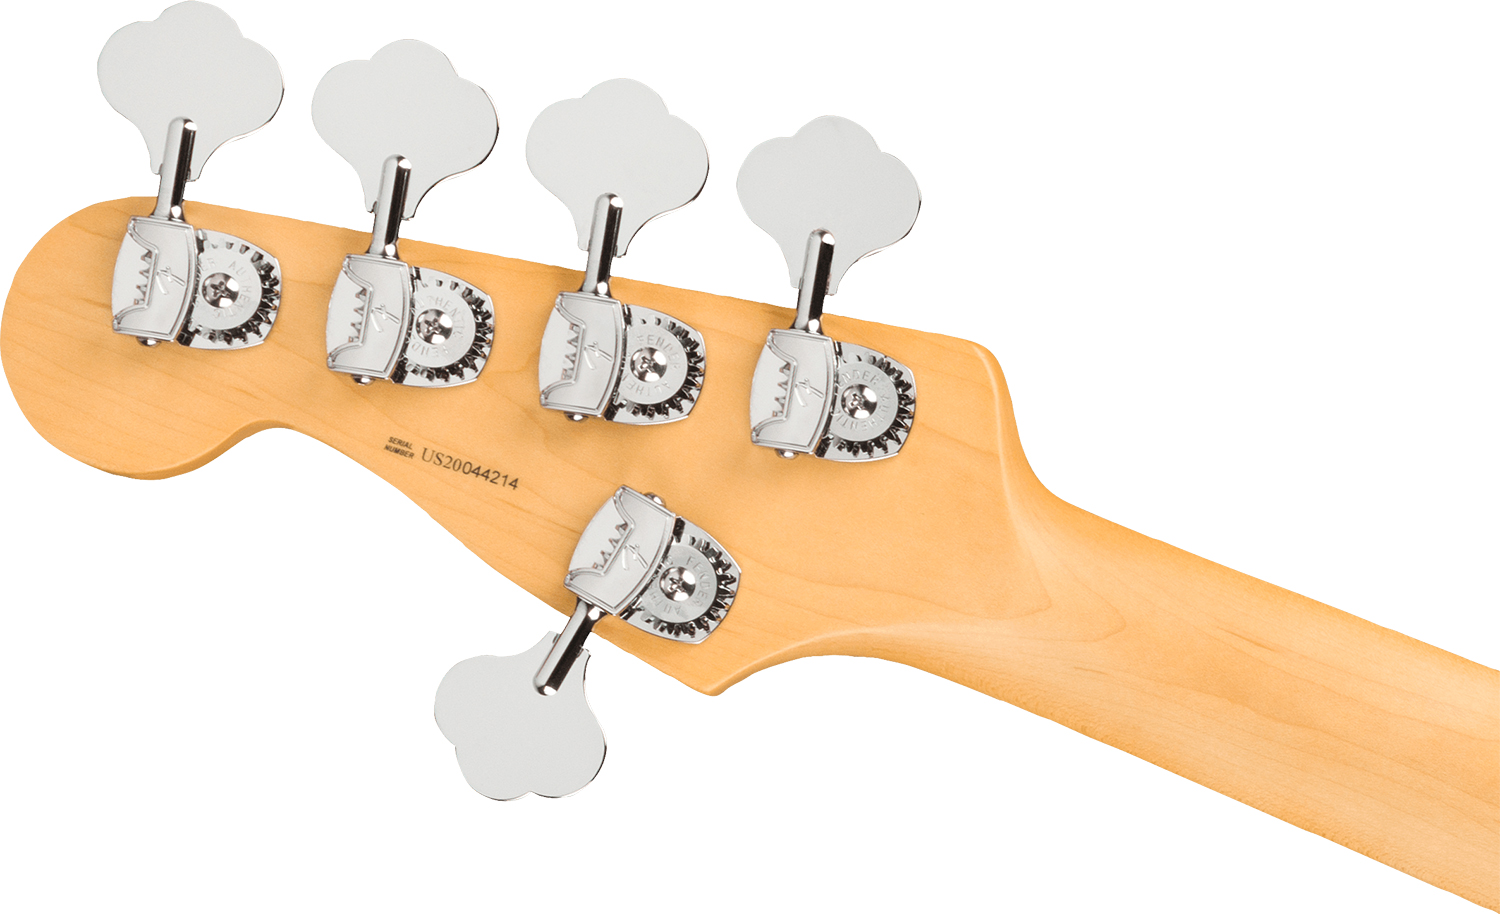 Fender Precision Bass V American Professional Ii Usa 5-cordes Rw - 3-color Sunburst - Bajo eléctrico de cuerpo sólido - Variation 3